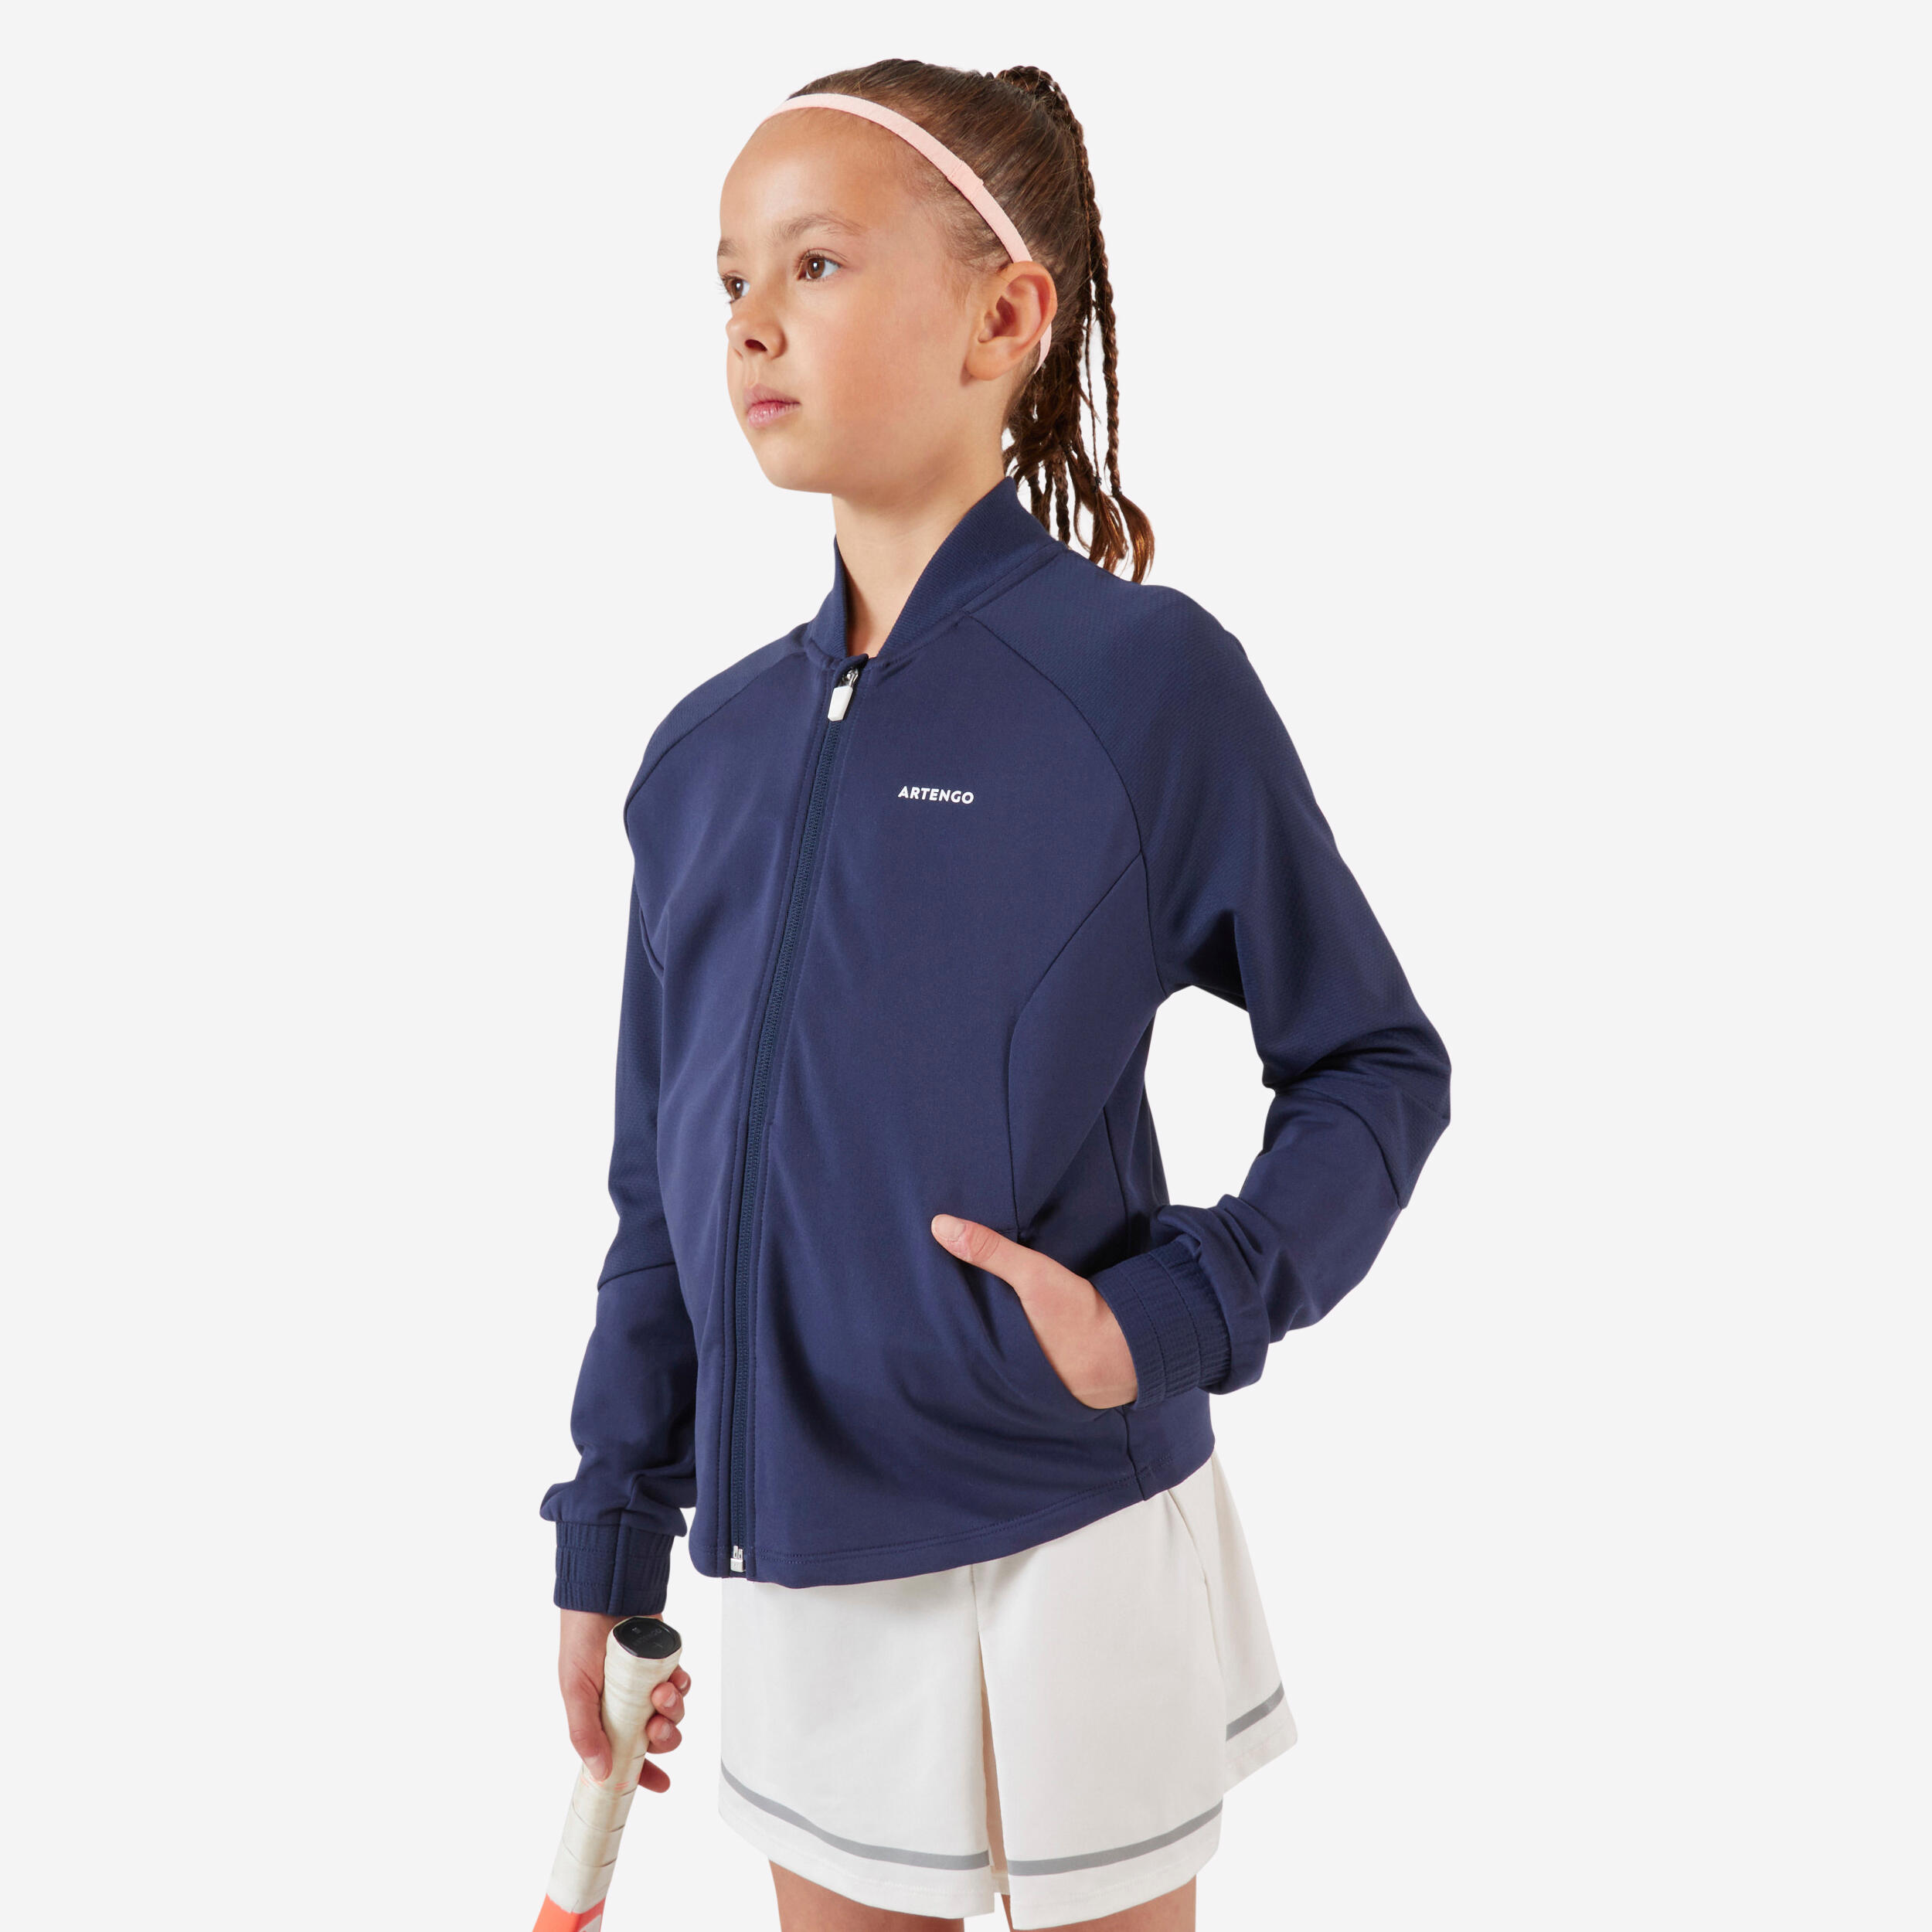 Girls' Tennis Jacket TJK500 - Navy Blue 1/6